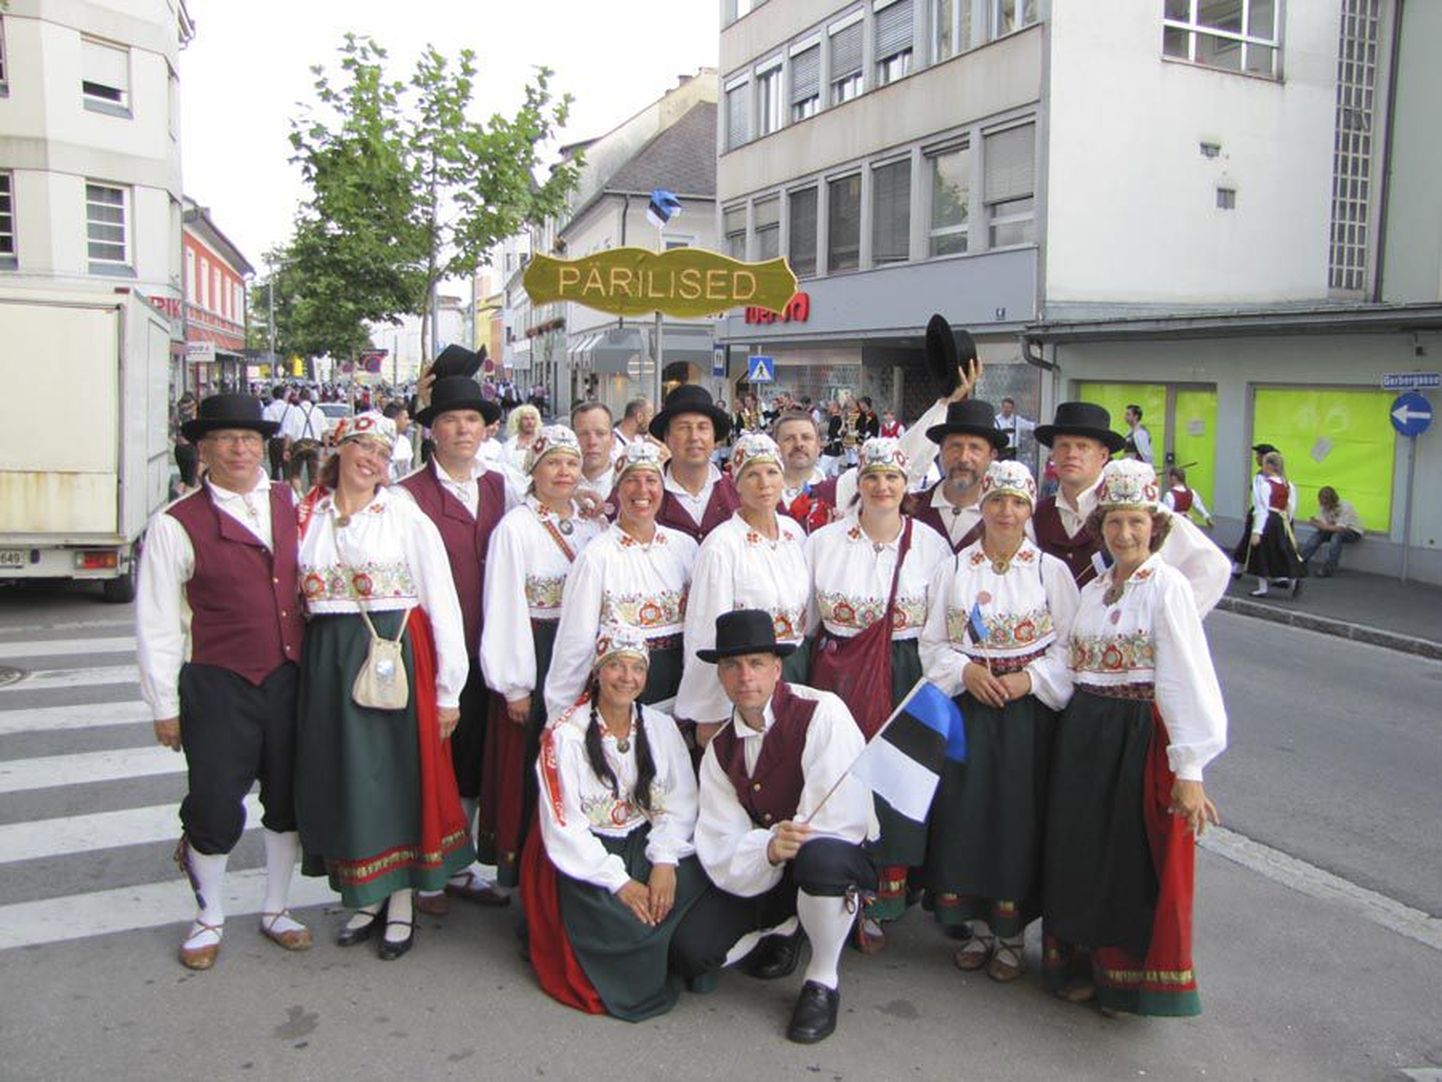 Rahvatantsurühm Pärilised tutvustas Austrias peetud festivalil nii eestlaste tantse kui ka rahvarõivaid.